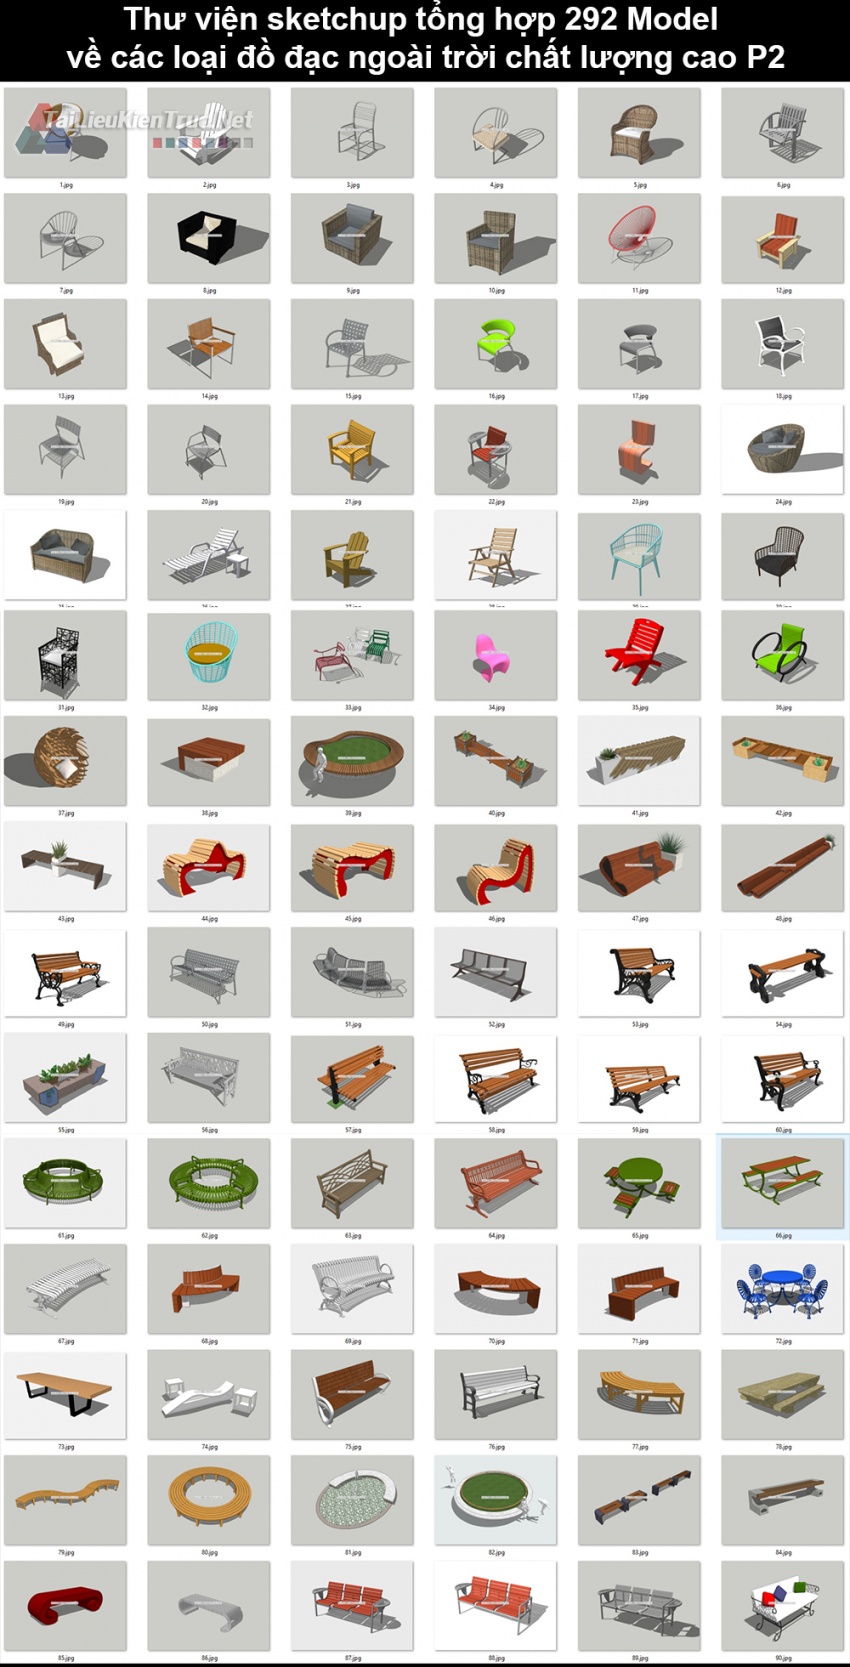 Thư viện Sketchup tổng hợp 292 Model về các loại đồ đạc ngoài trời chất lượng cao P2